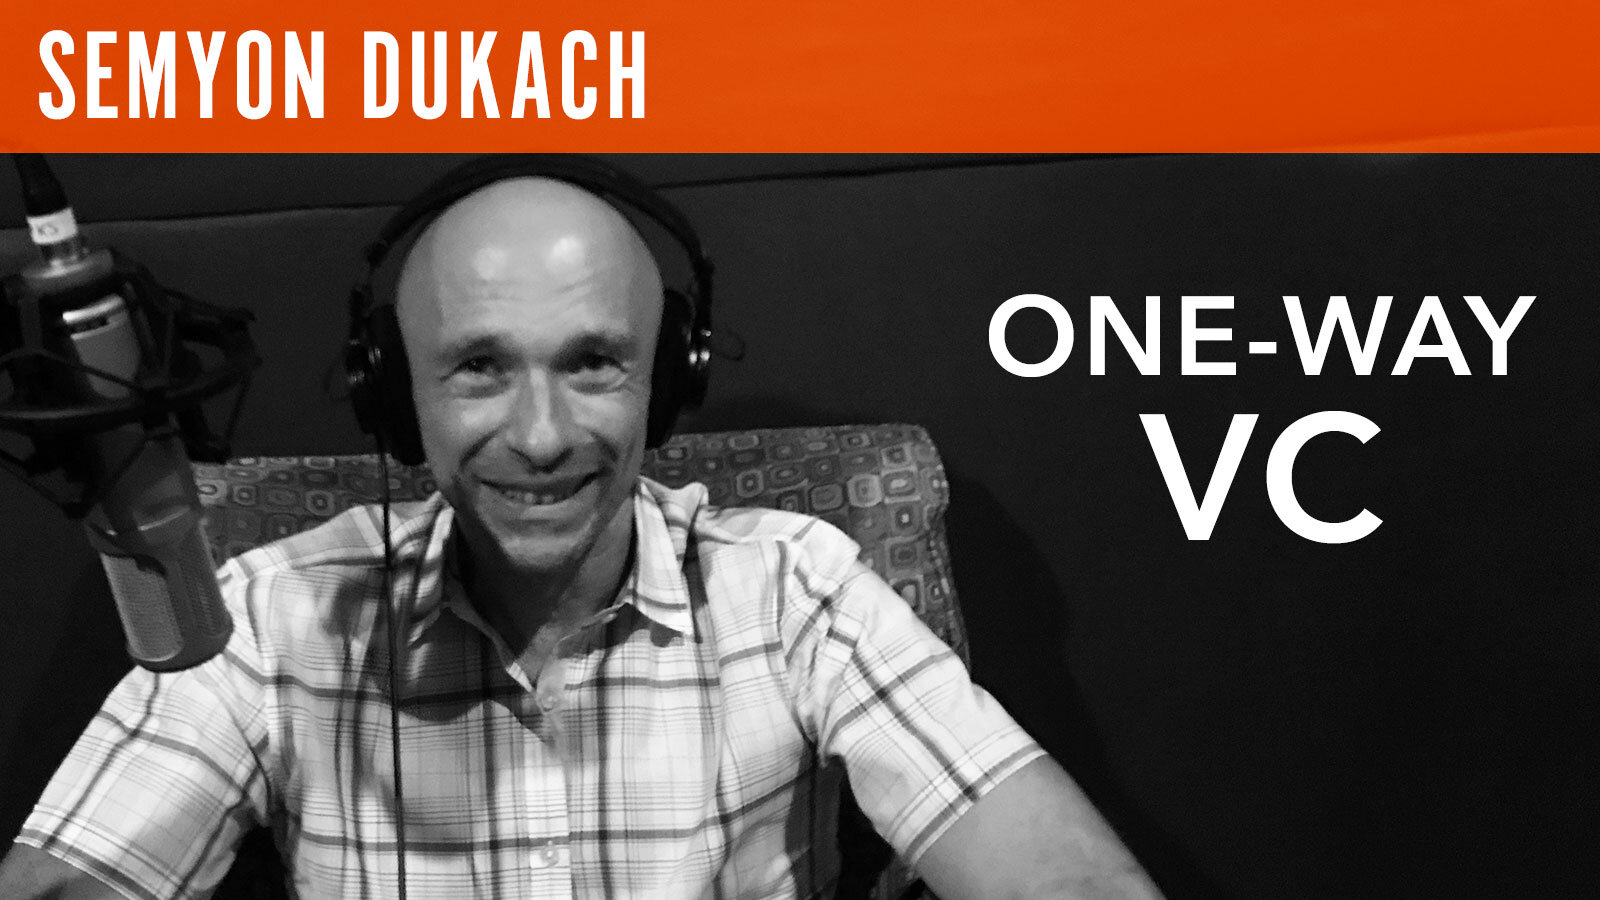 Semyon Dukach, "One-way VC"